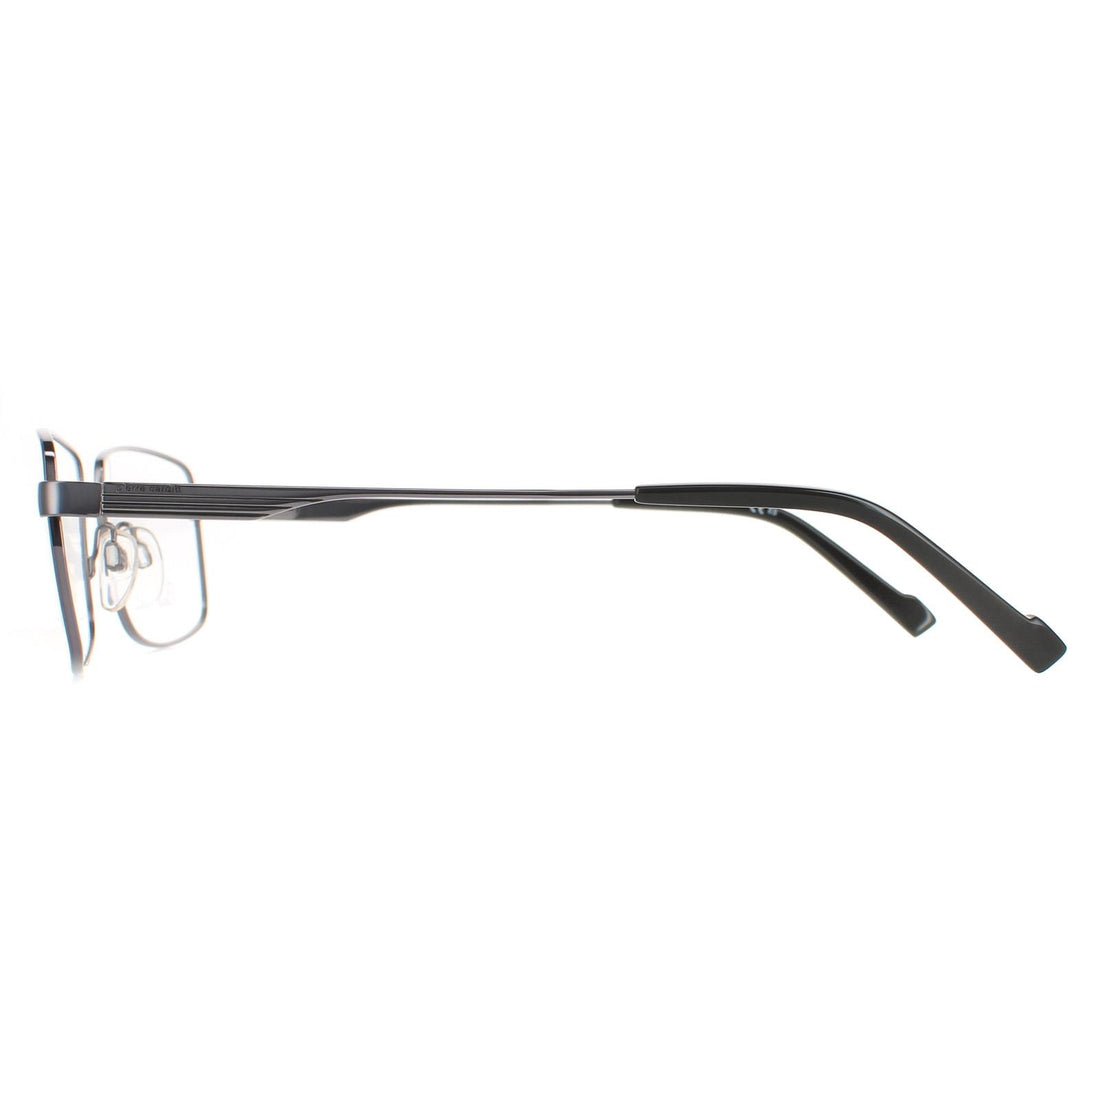 Pierre Cardin Glasses Frames P.C. 6850 KJ1 Dark Ruthenium Men